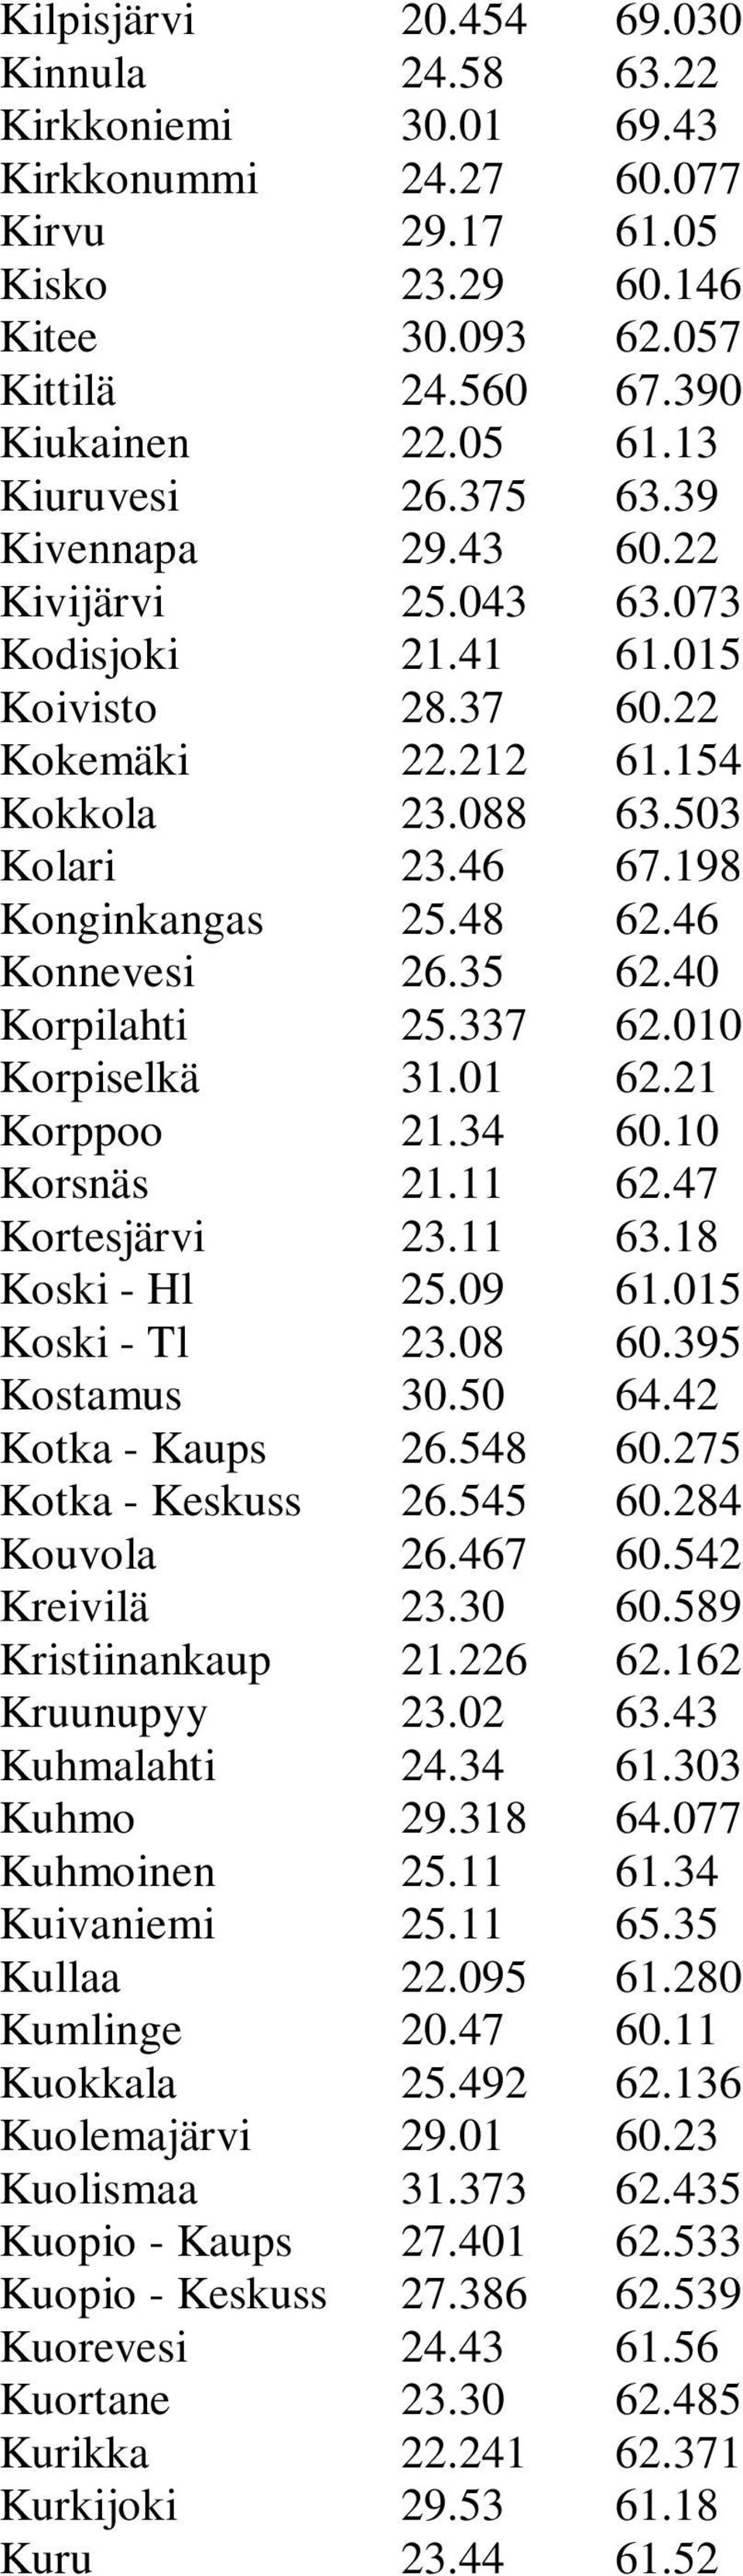 Kuolemajärvi Kuolismaa Kuopio - Kaups Kuopio - Keskuss Kuorevesi Kuortane Kurikka Kurkijoki Kuru 20.454 24.58 30.01 24.27 29.17 23.29 30.093 24.560 22.05 26.375 29.43 25.043 21.41 28.37 22.212 23.